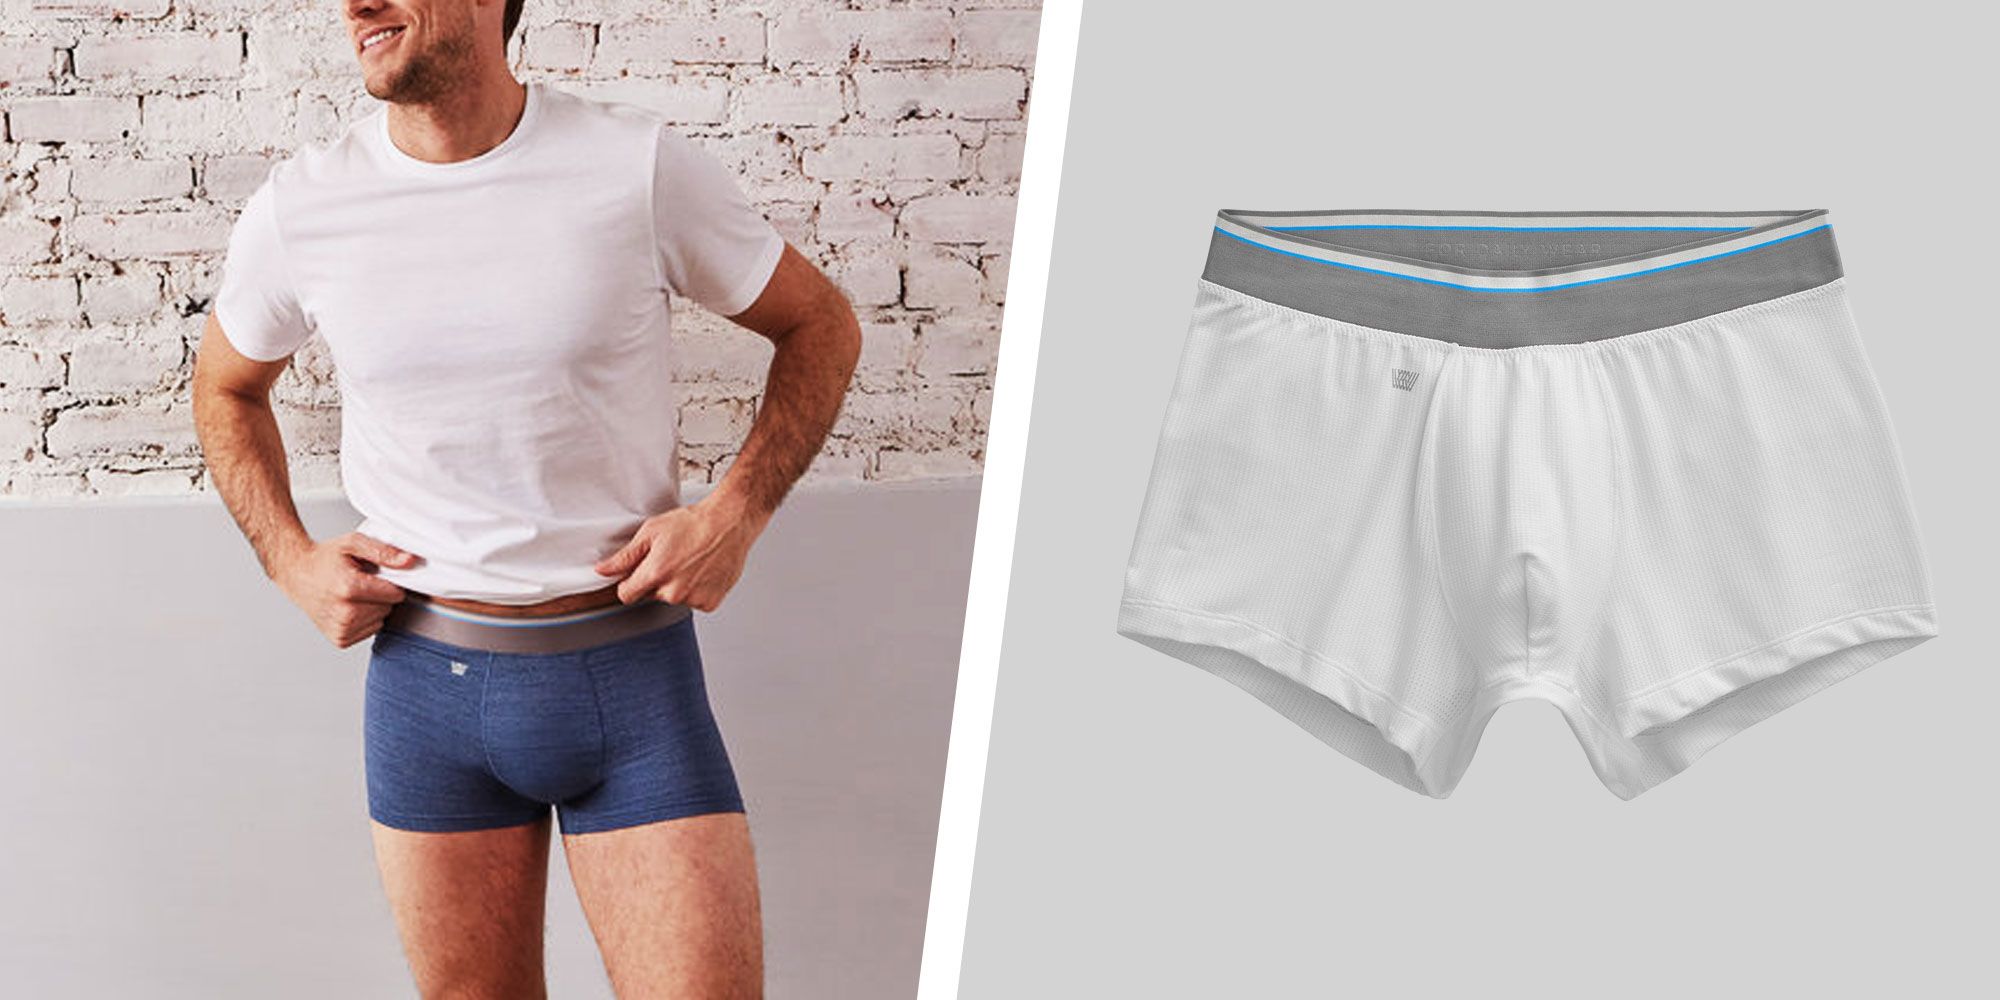 ZZKKO Stretchy Fashion Men's Underwear Boxer Briefs Breathable Summer Sports 